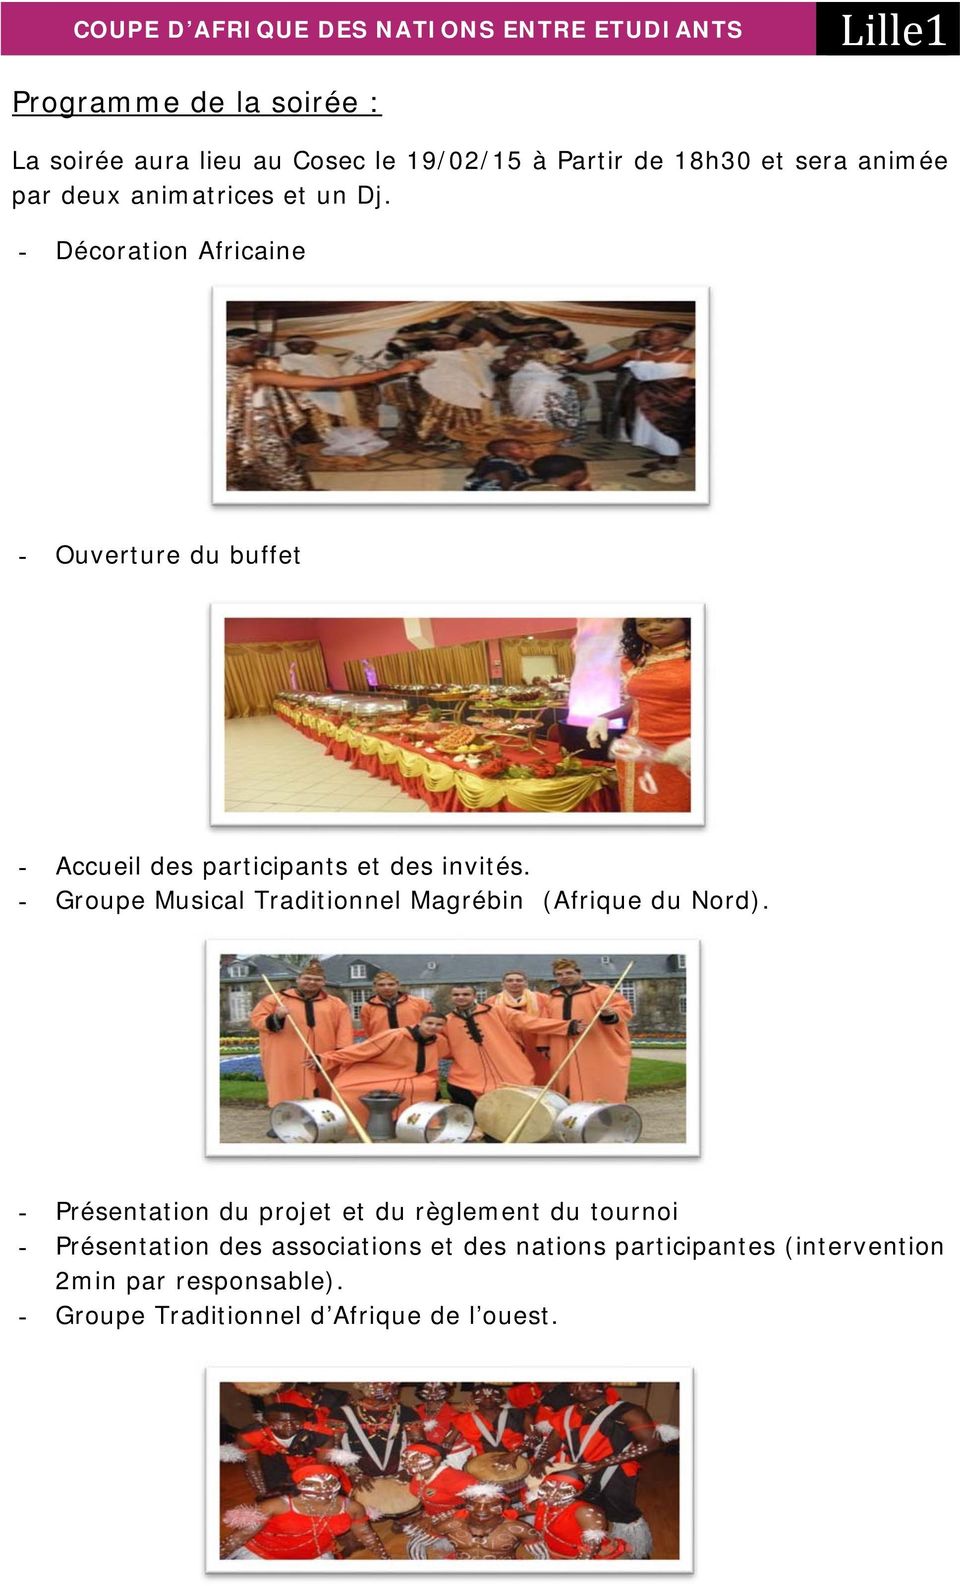 - Groupe Musical Traditionnel Magrébin (Afrique du Nord).